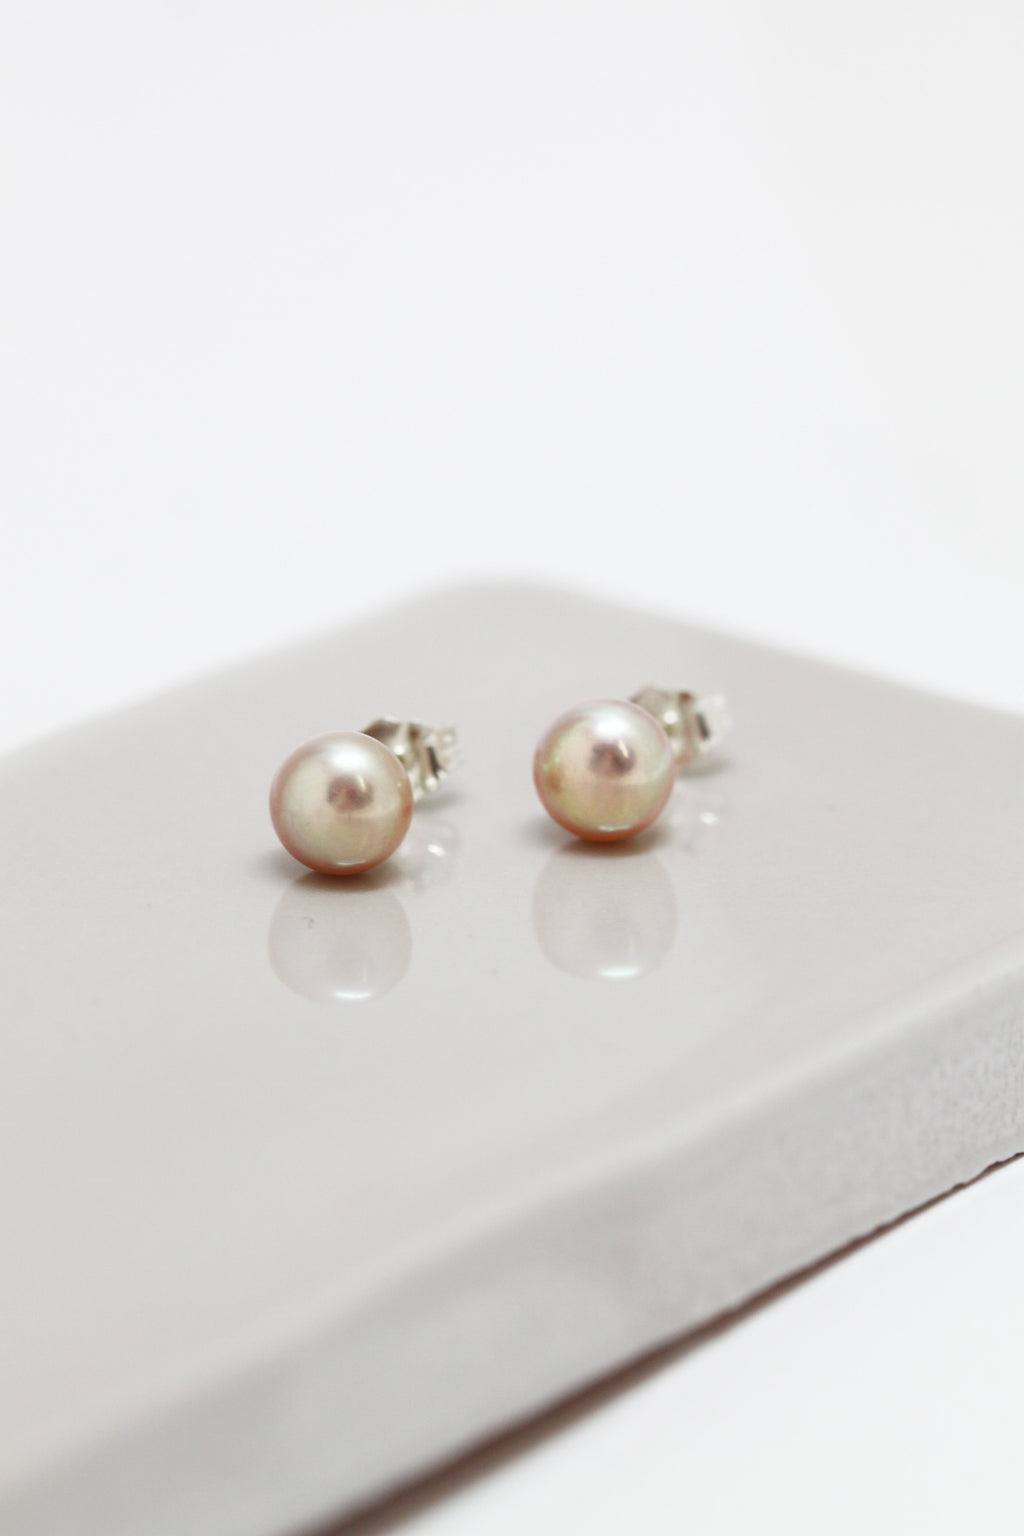 IMPARFAIT // Boucles d'oreilles perles roses // 7 mm